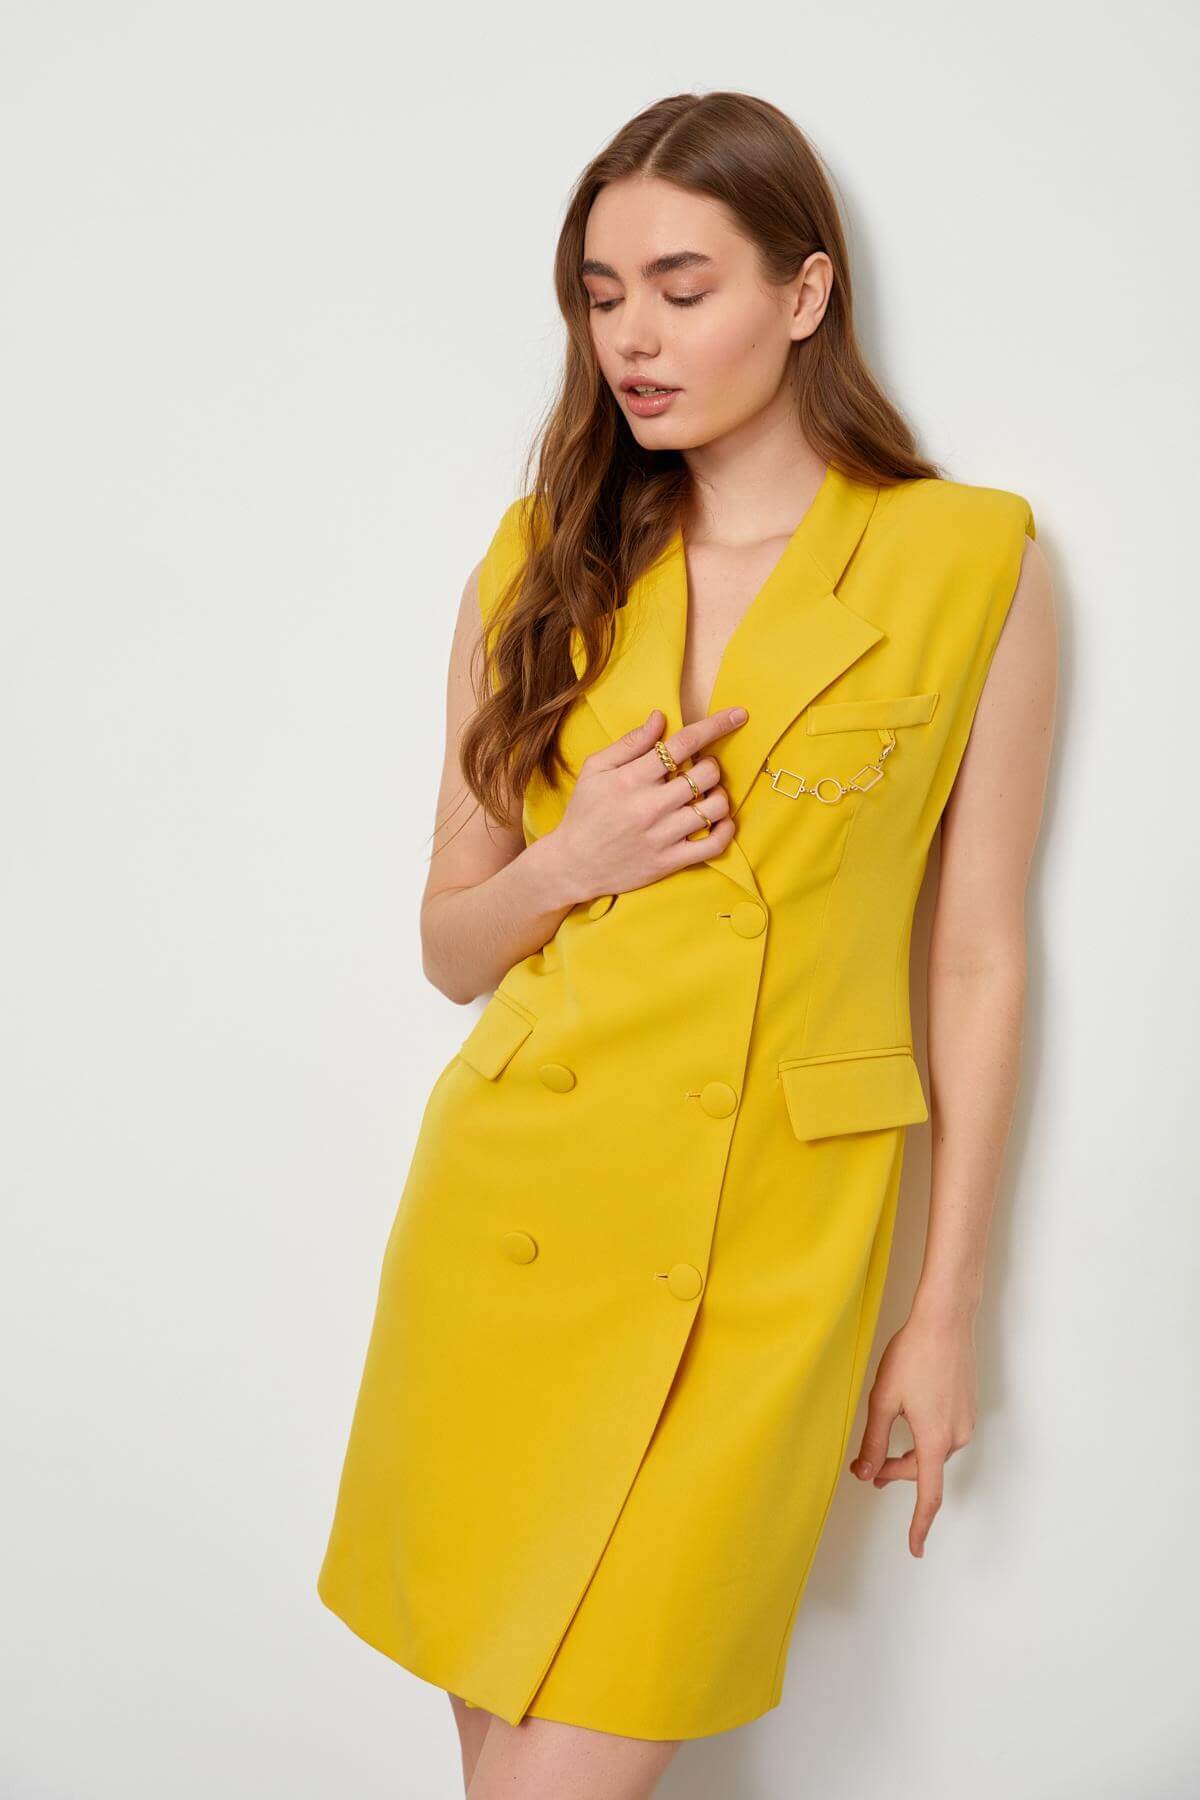 Kadın Sarı Zincir Detaylı Kolsuz Ceket Elbise ST060S40107602 | Setre